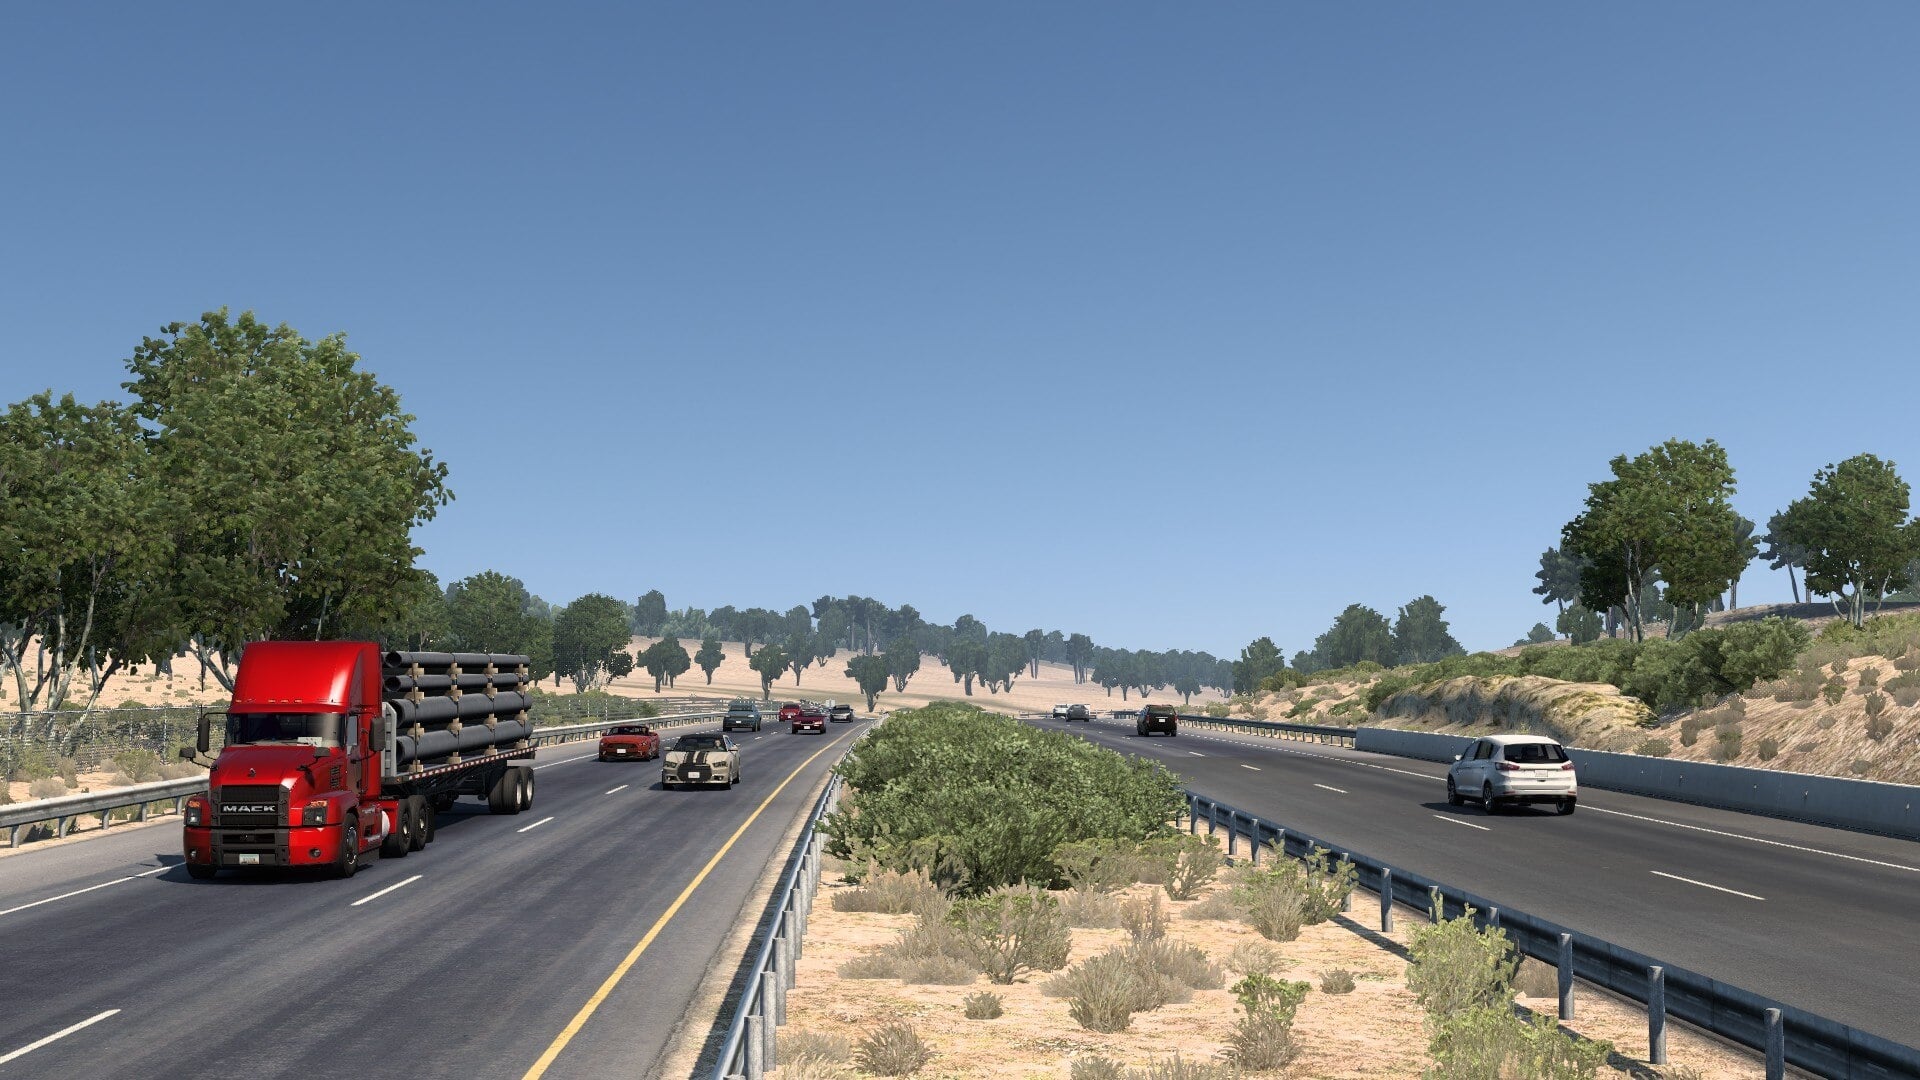 Realistischer Verkehr im American Truck Simulator. Quelle: Steam Workshop / Bigyarus